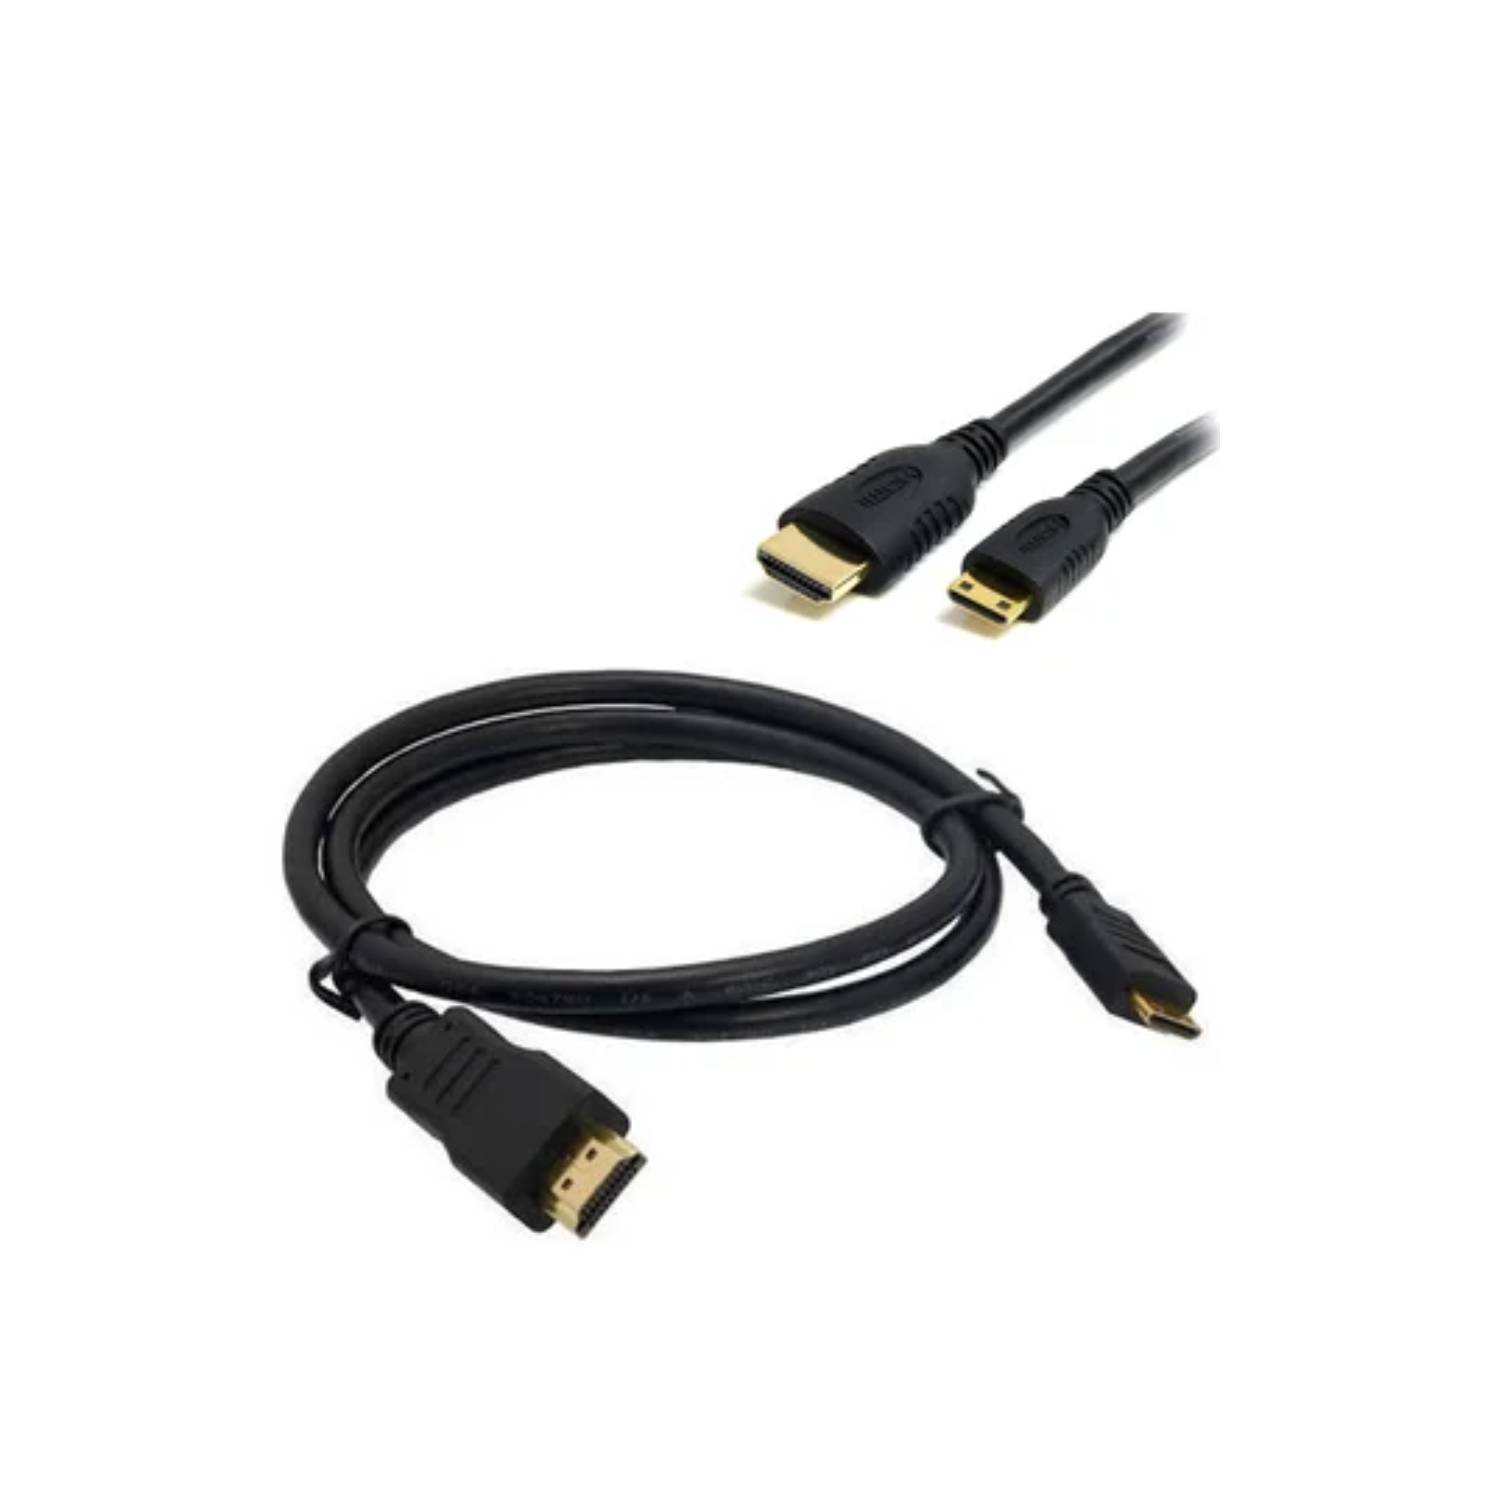 Cable Displayport a HDMI Netcom Pvc Macho 5 Metros 4k DP a HDMI